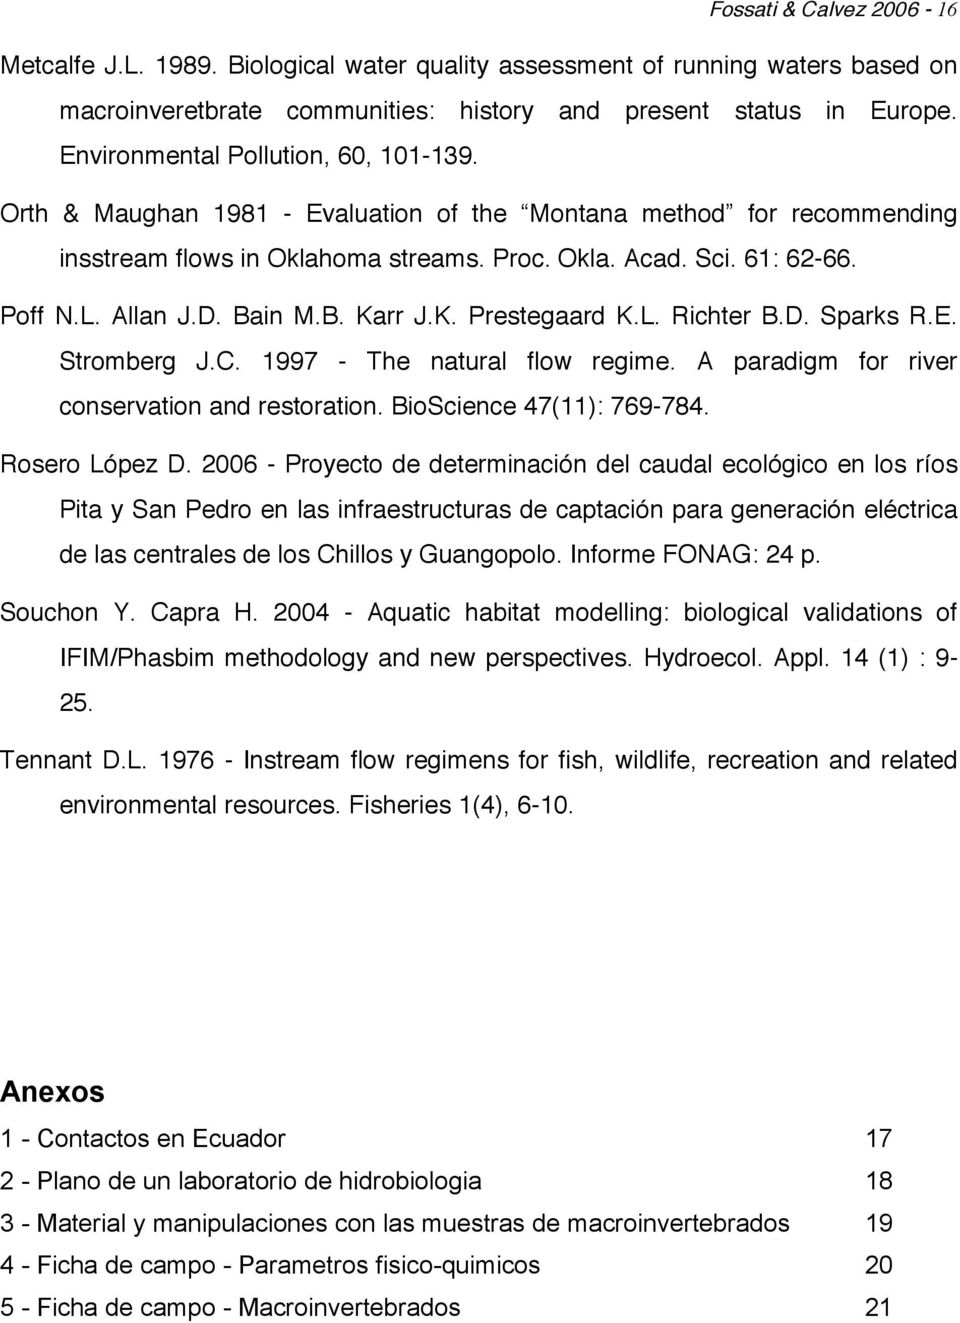 D. Bain M.B. Karr J.K. Prestegaard K.L. Richter B.D. Sparks R.E. Stromberg J.C. 1997 - The natural flow regime. A paradigm for river conservation and restoration. BioScience 47(11): 769-784.